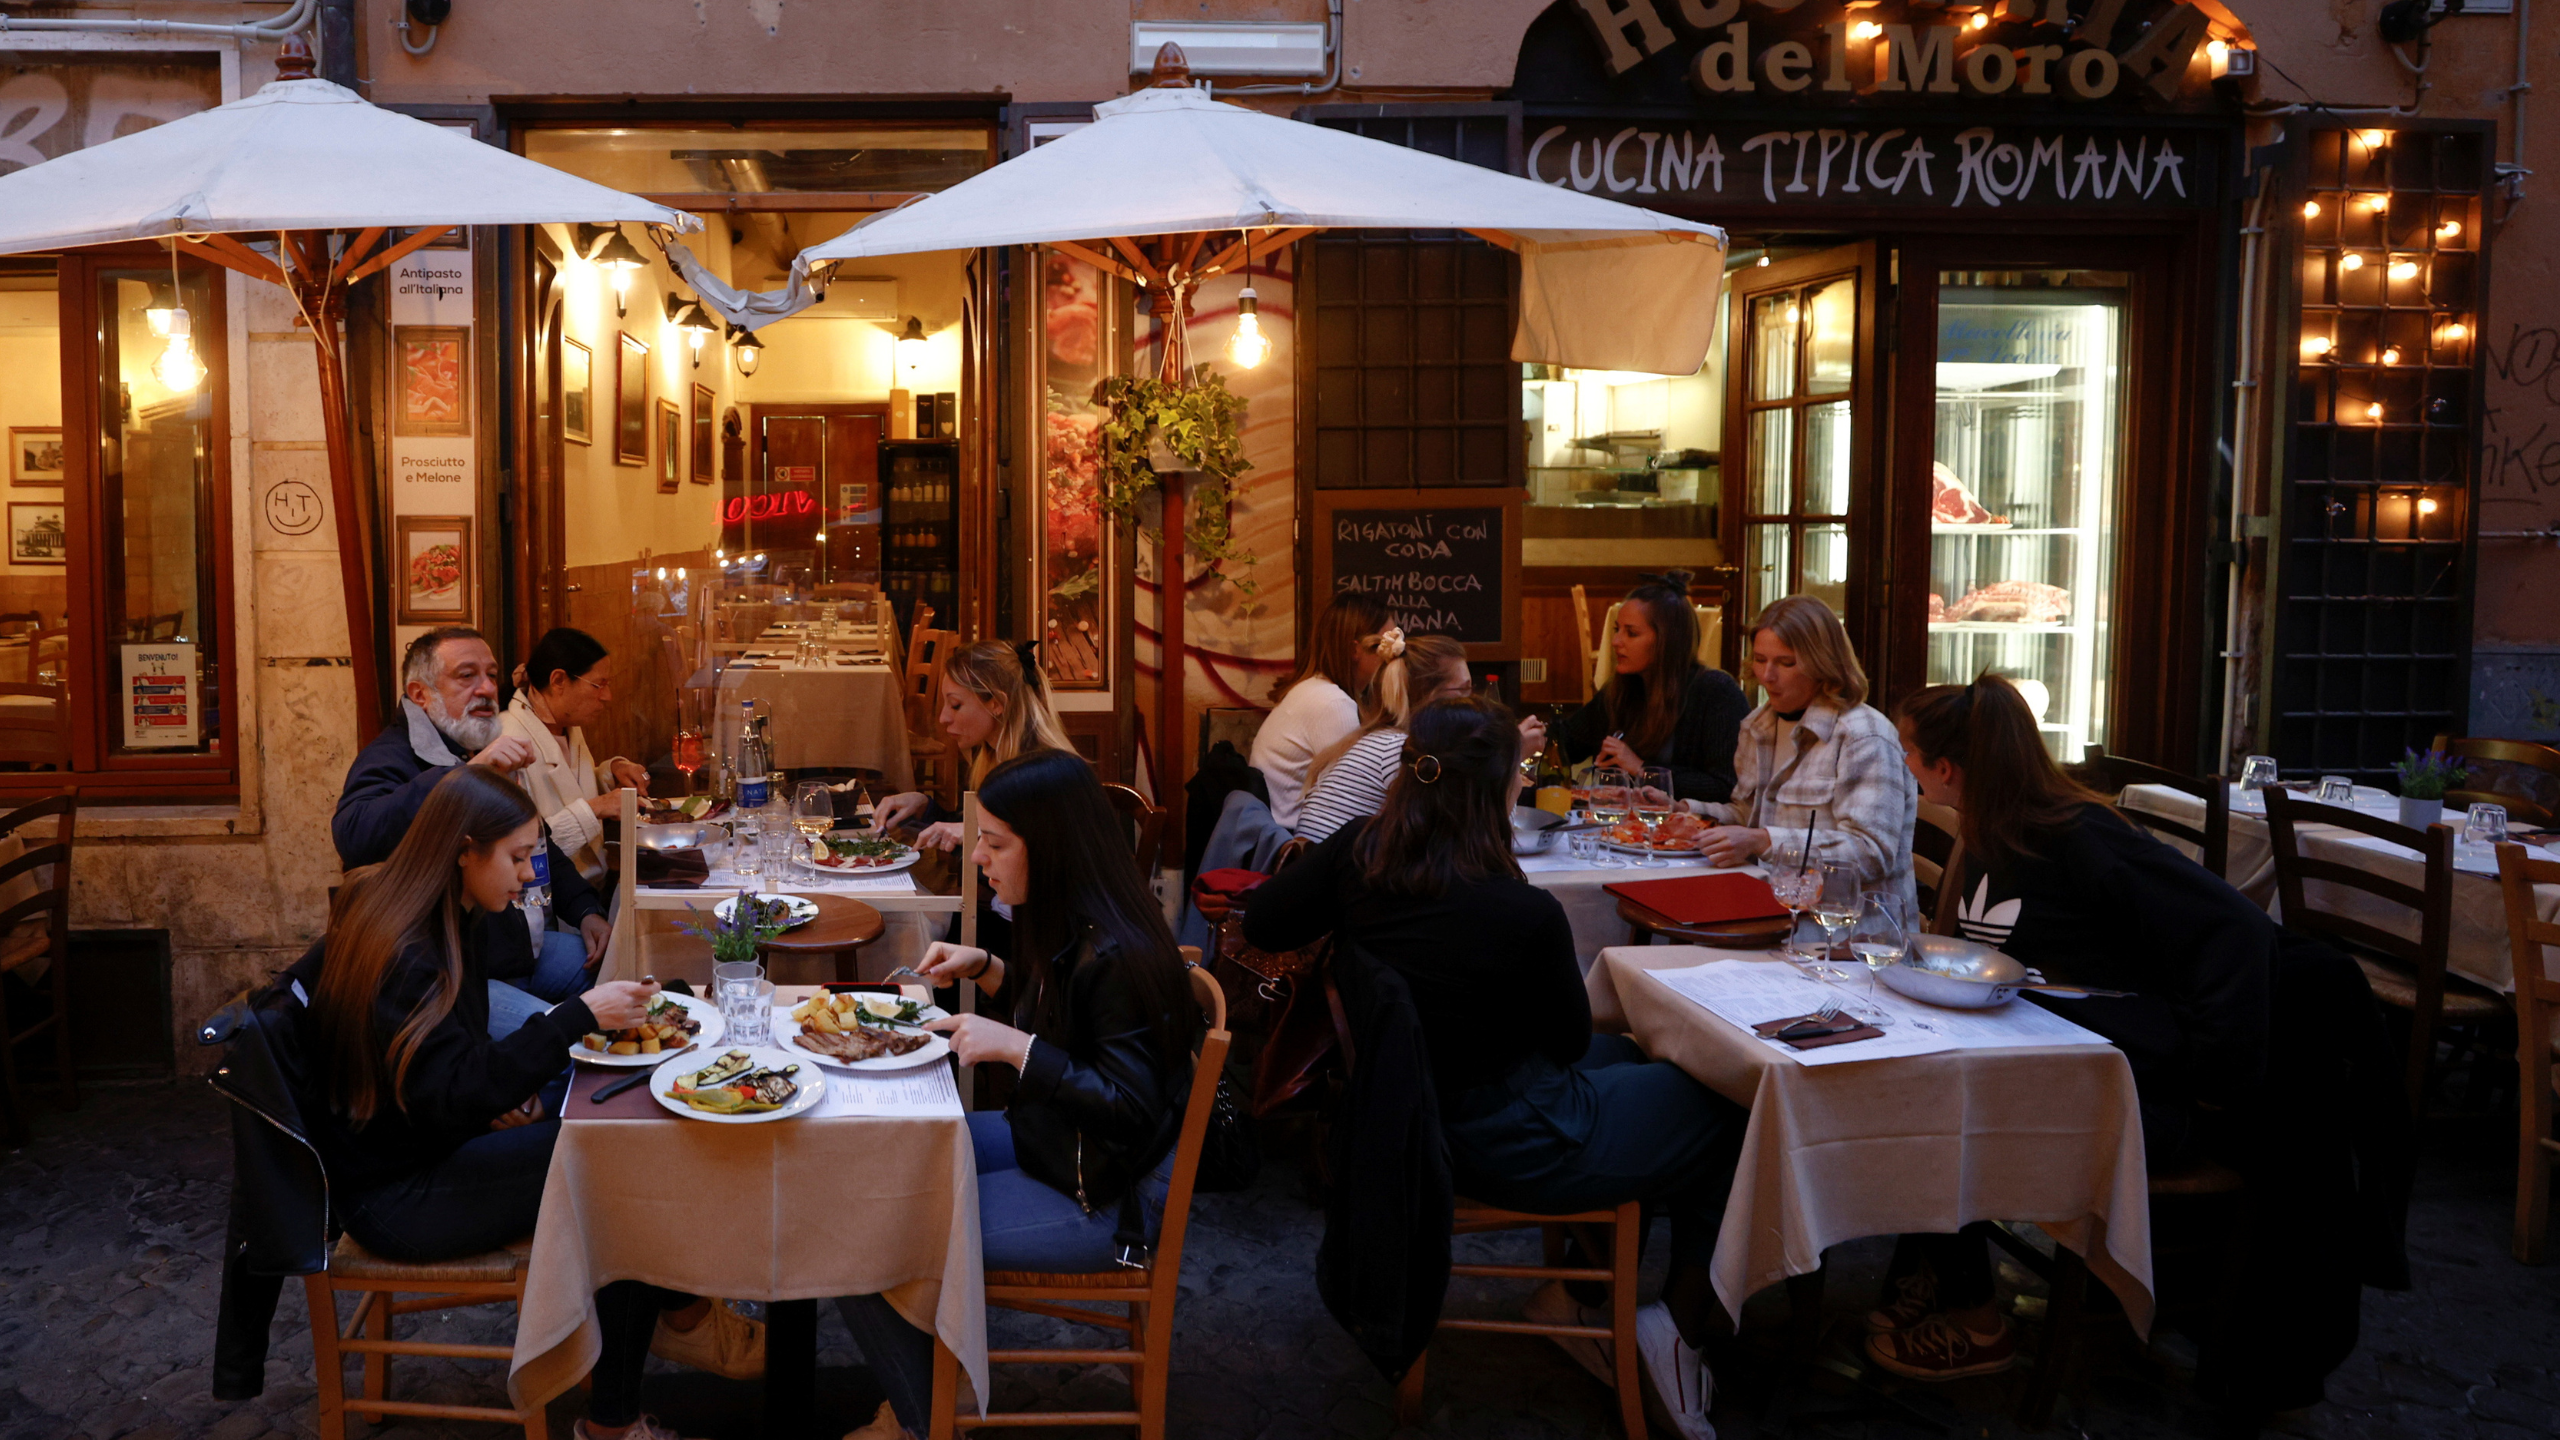 Les restaurants de cette province espagnole factureront un supplément aux touristes pour s’asseoir à l’ombre